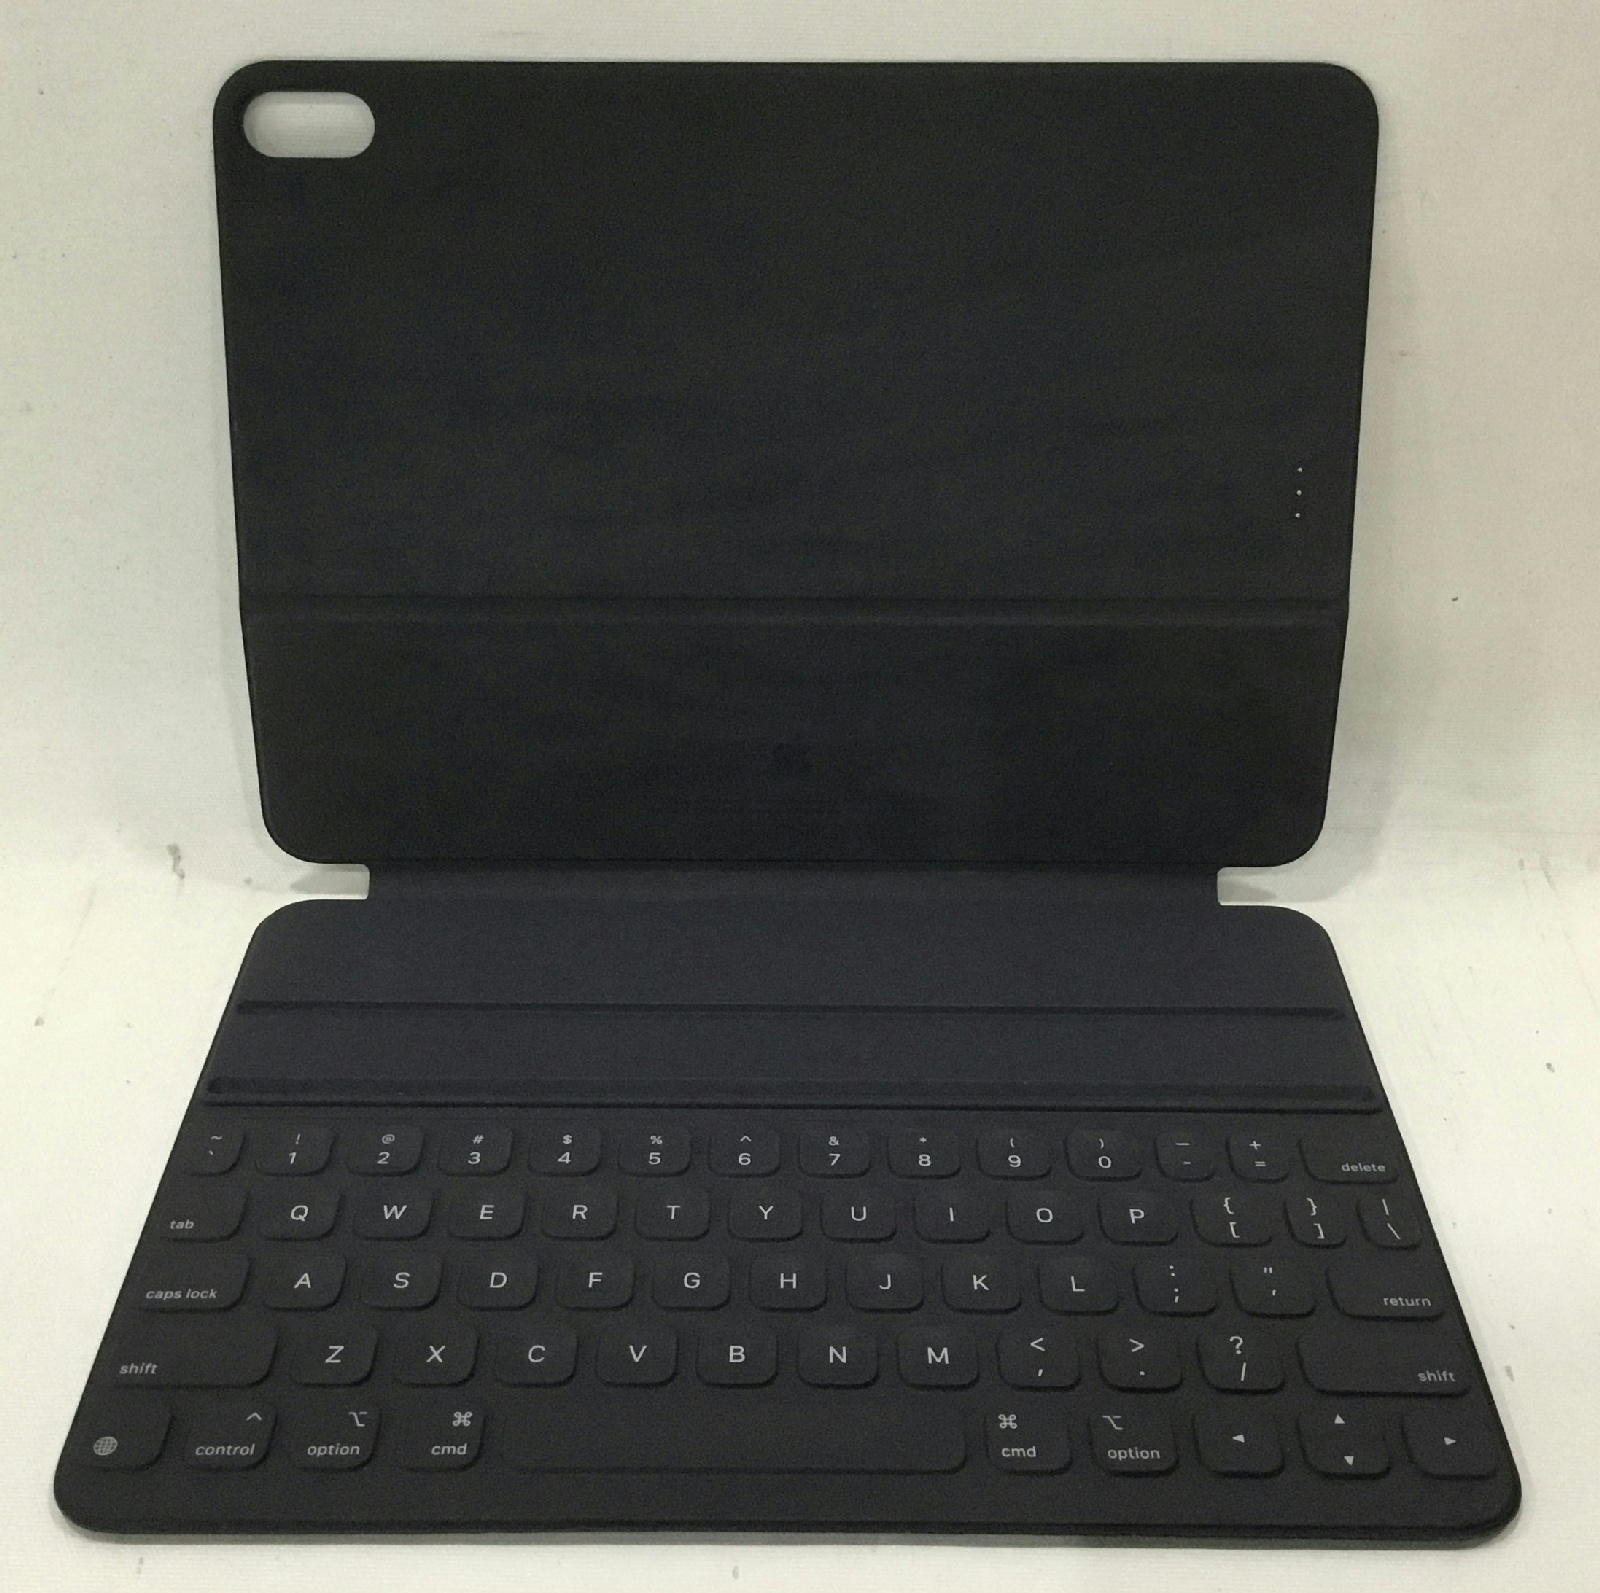 apple smart keyboard folio 11 inch lap